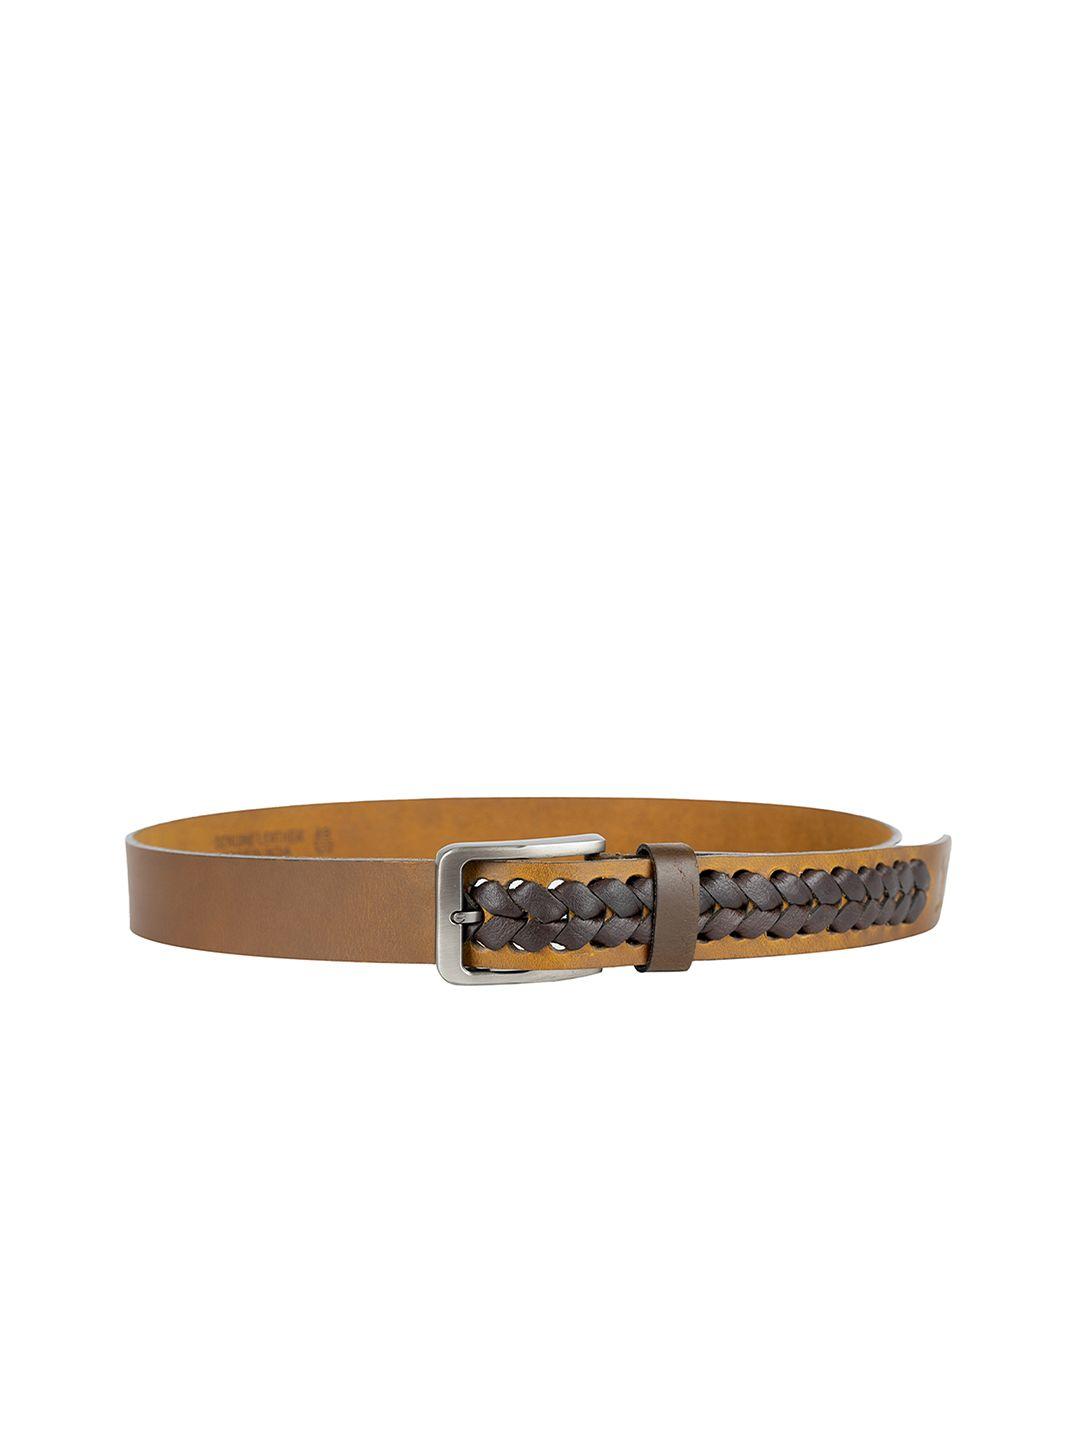 redhorns men textured leather belt